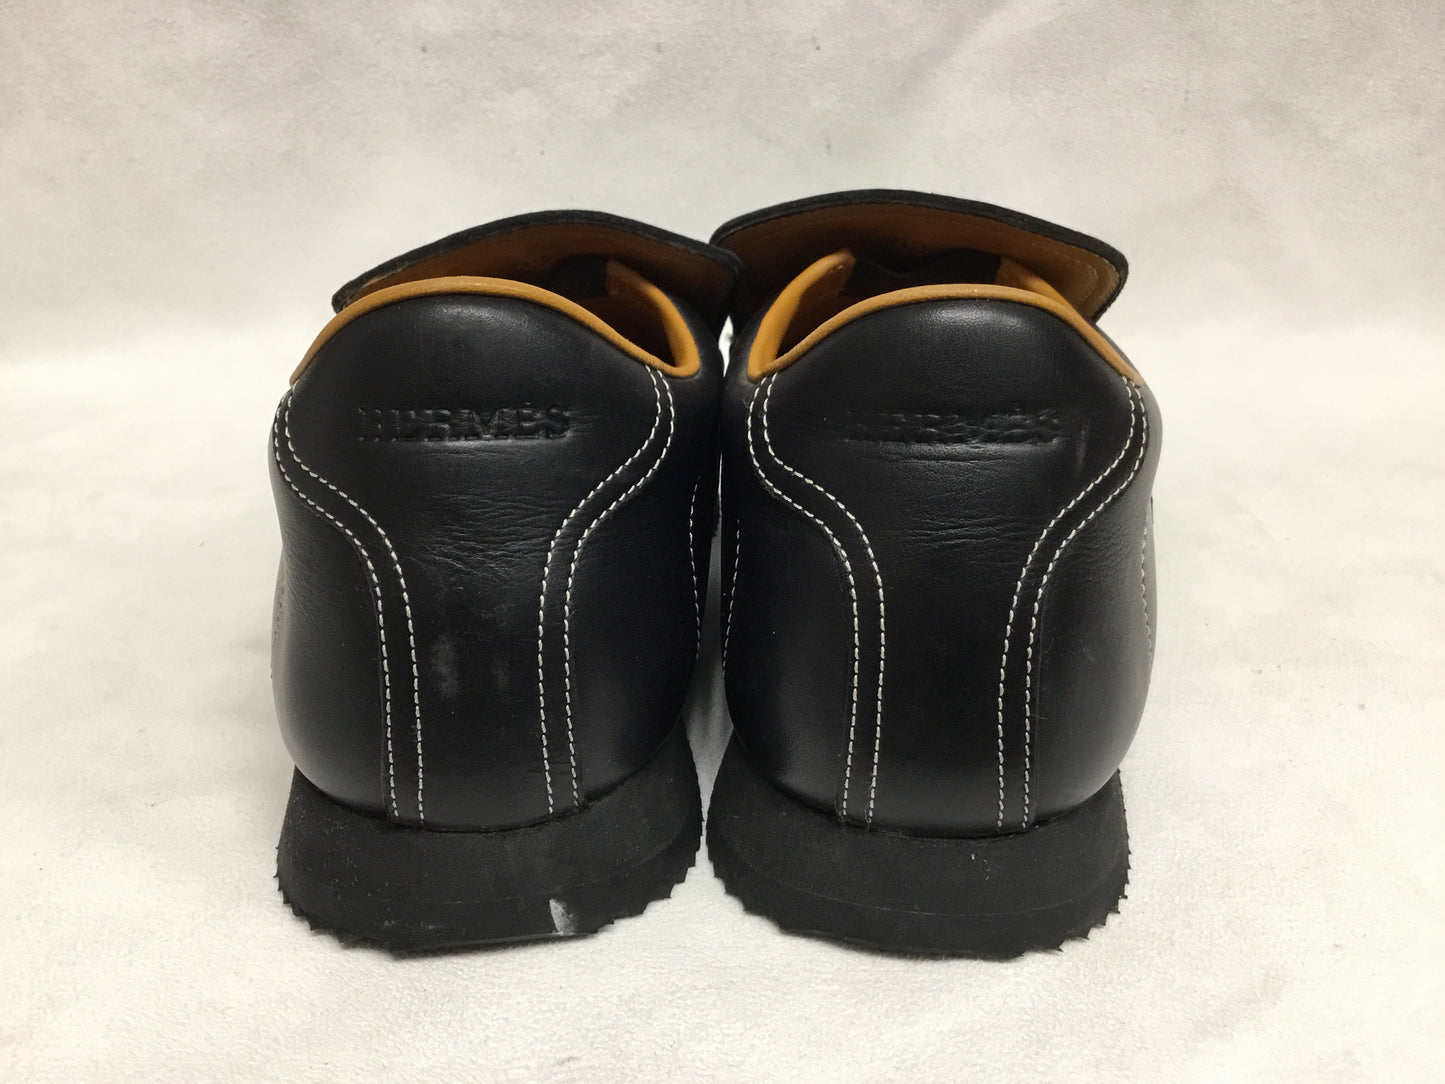 Hermes Black Leather Slip On Loafers